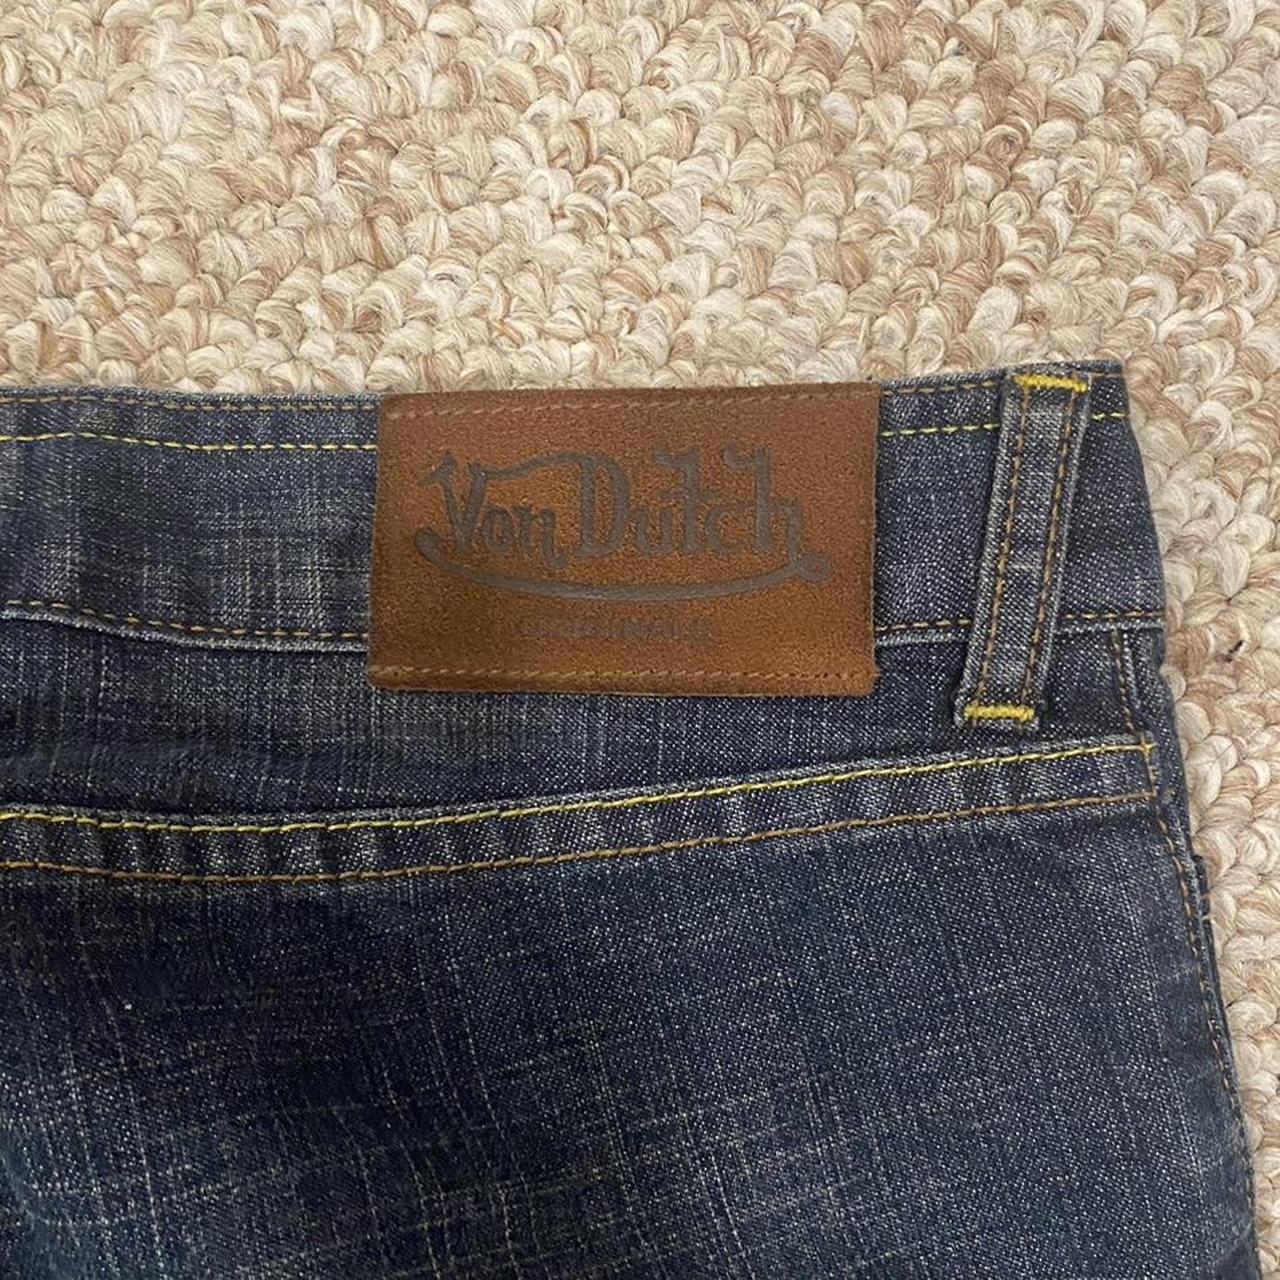 Original Von Dutch Jeans ️Fits size 24-26in waist... - Depop